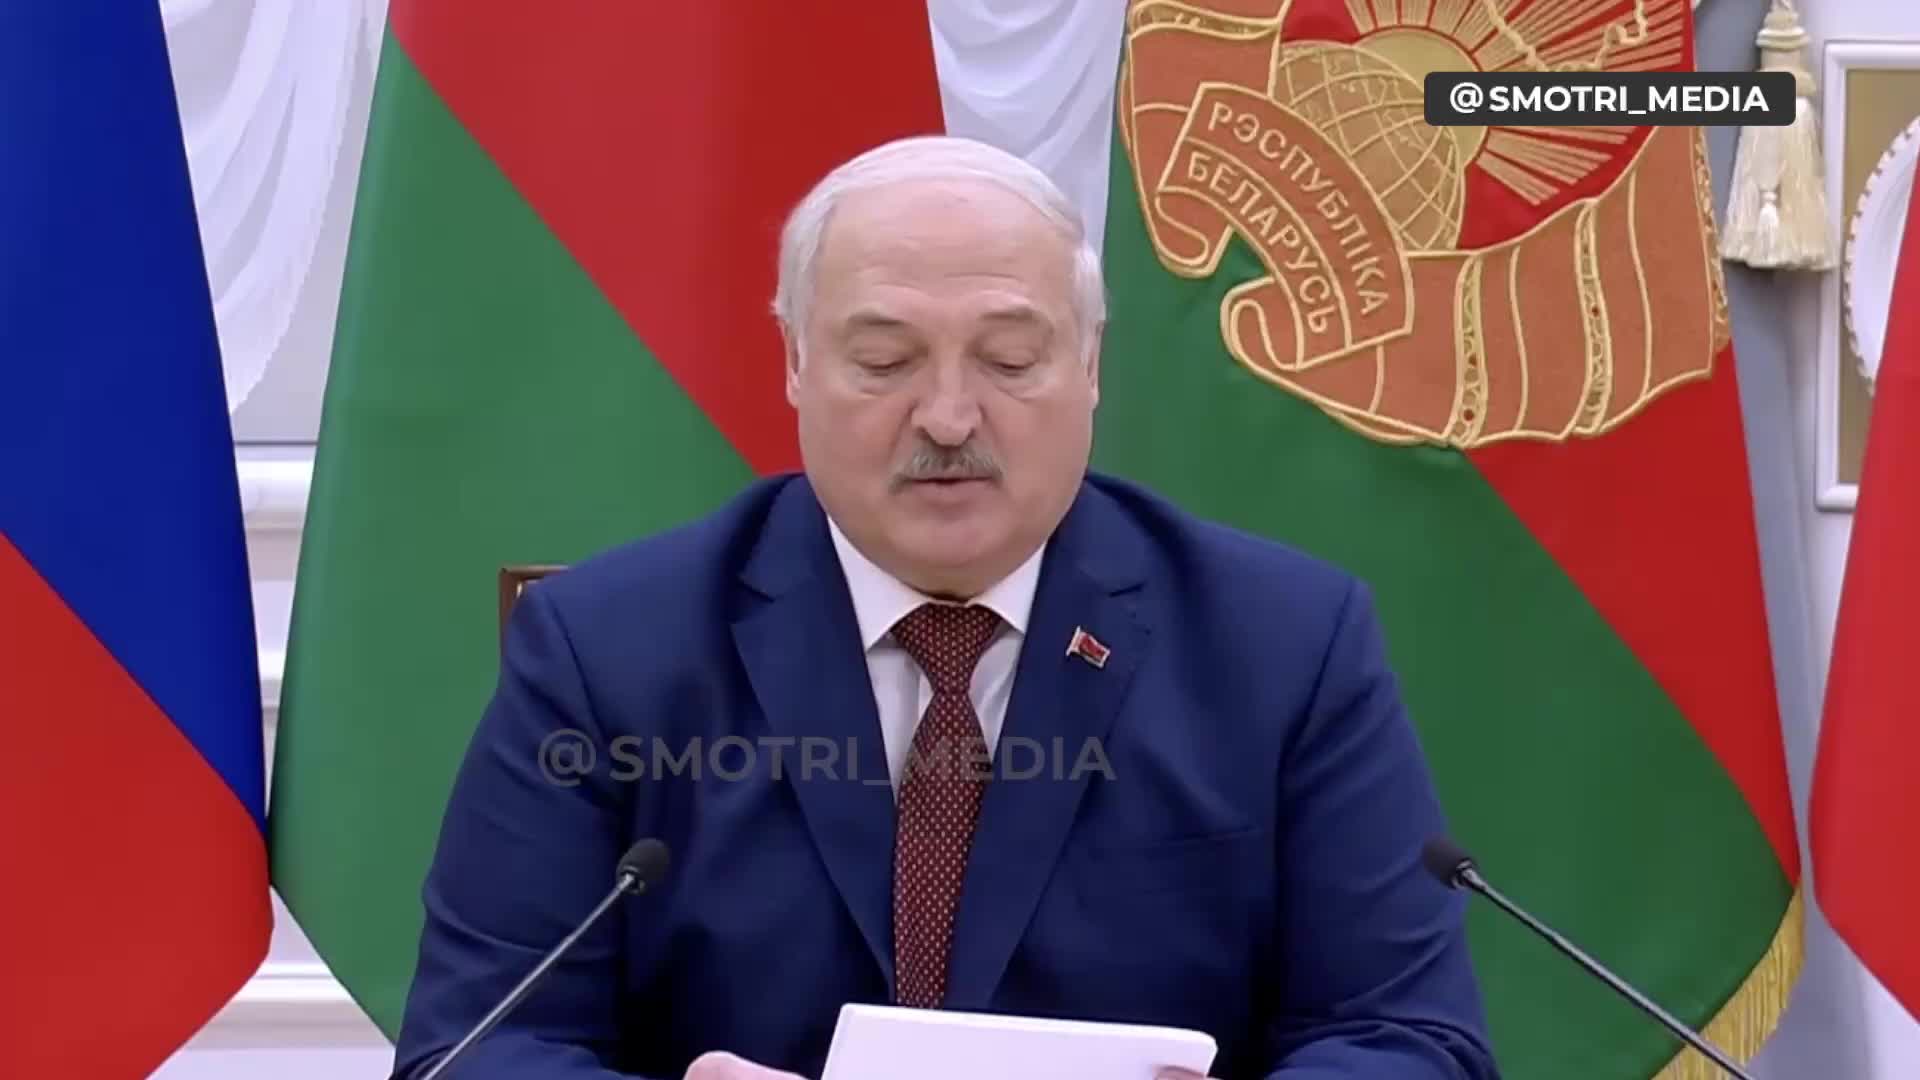 Łukaszenka powiedział, że omawiał z Putinem możliwości reakcji na zagrożenia w pobliżu granic Państwa Związkowego